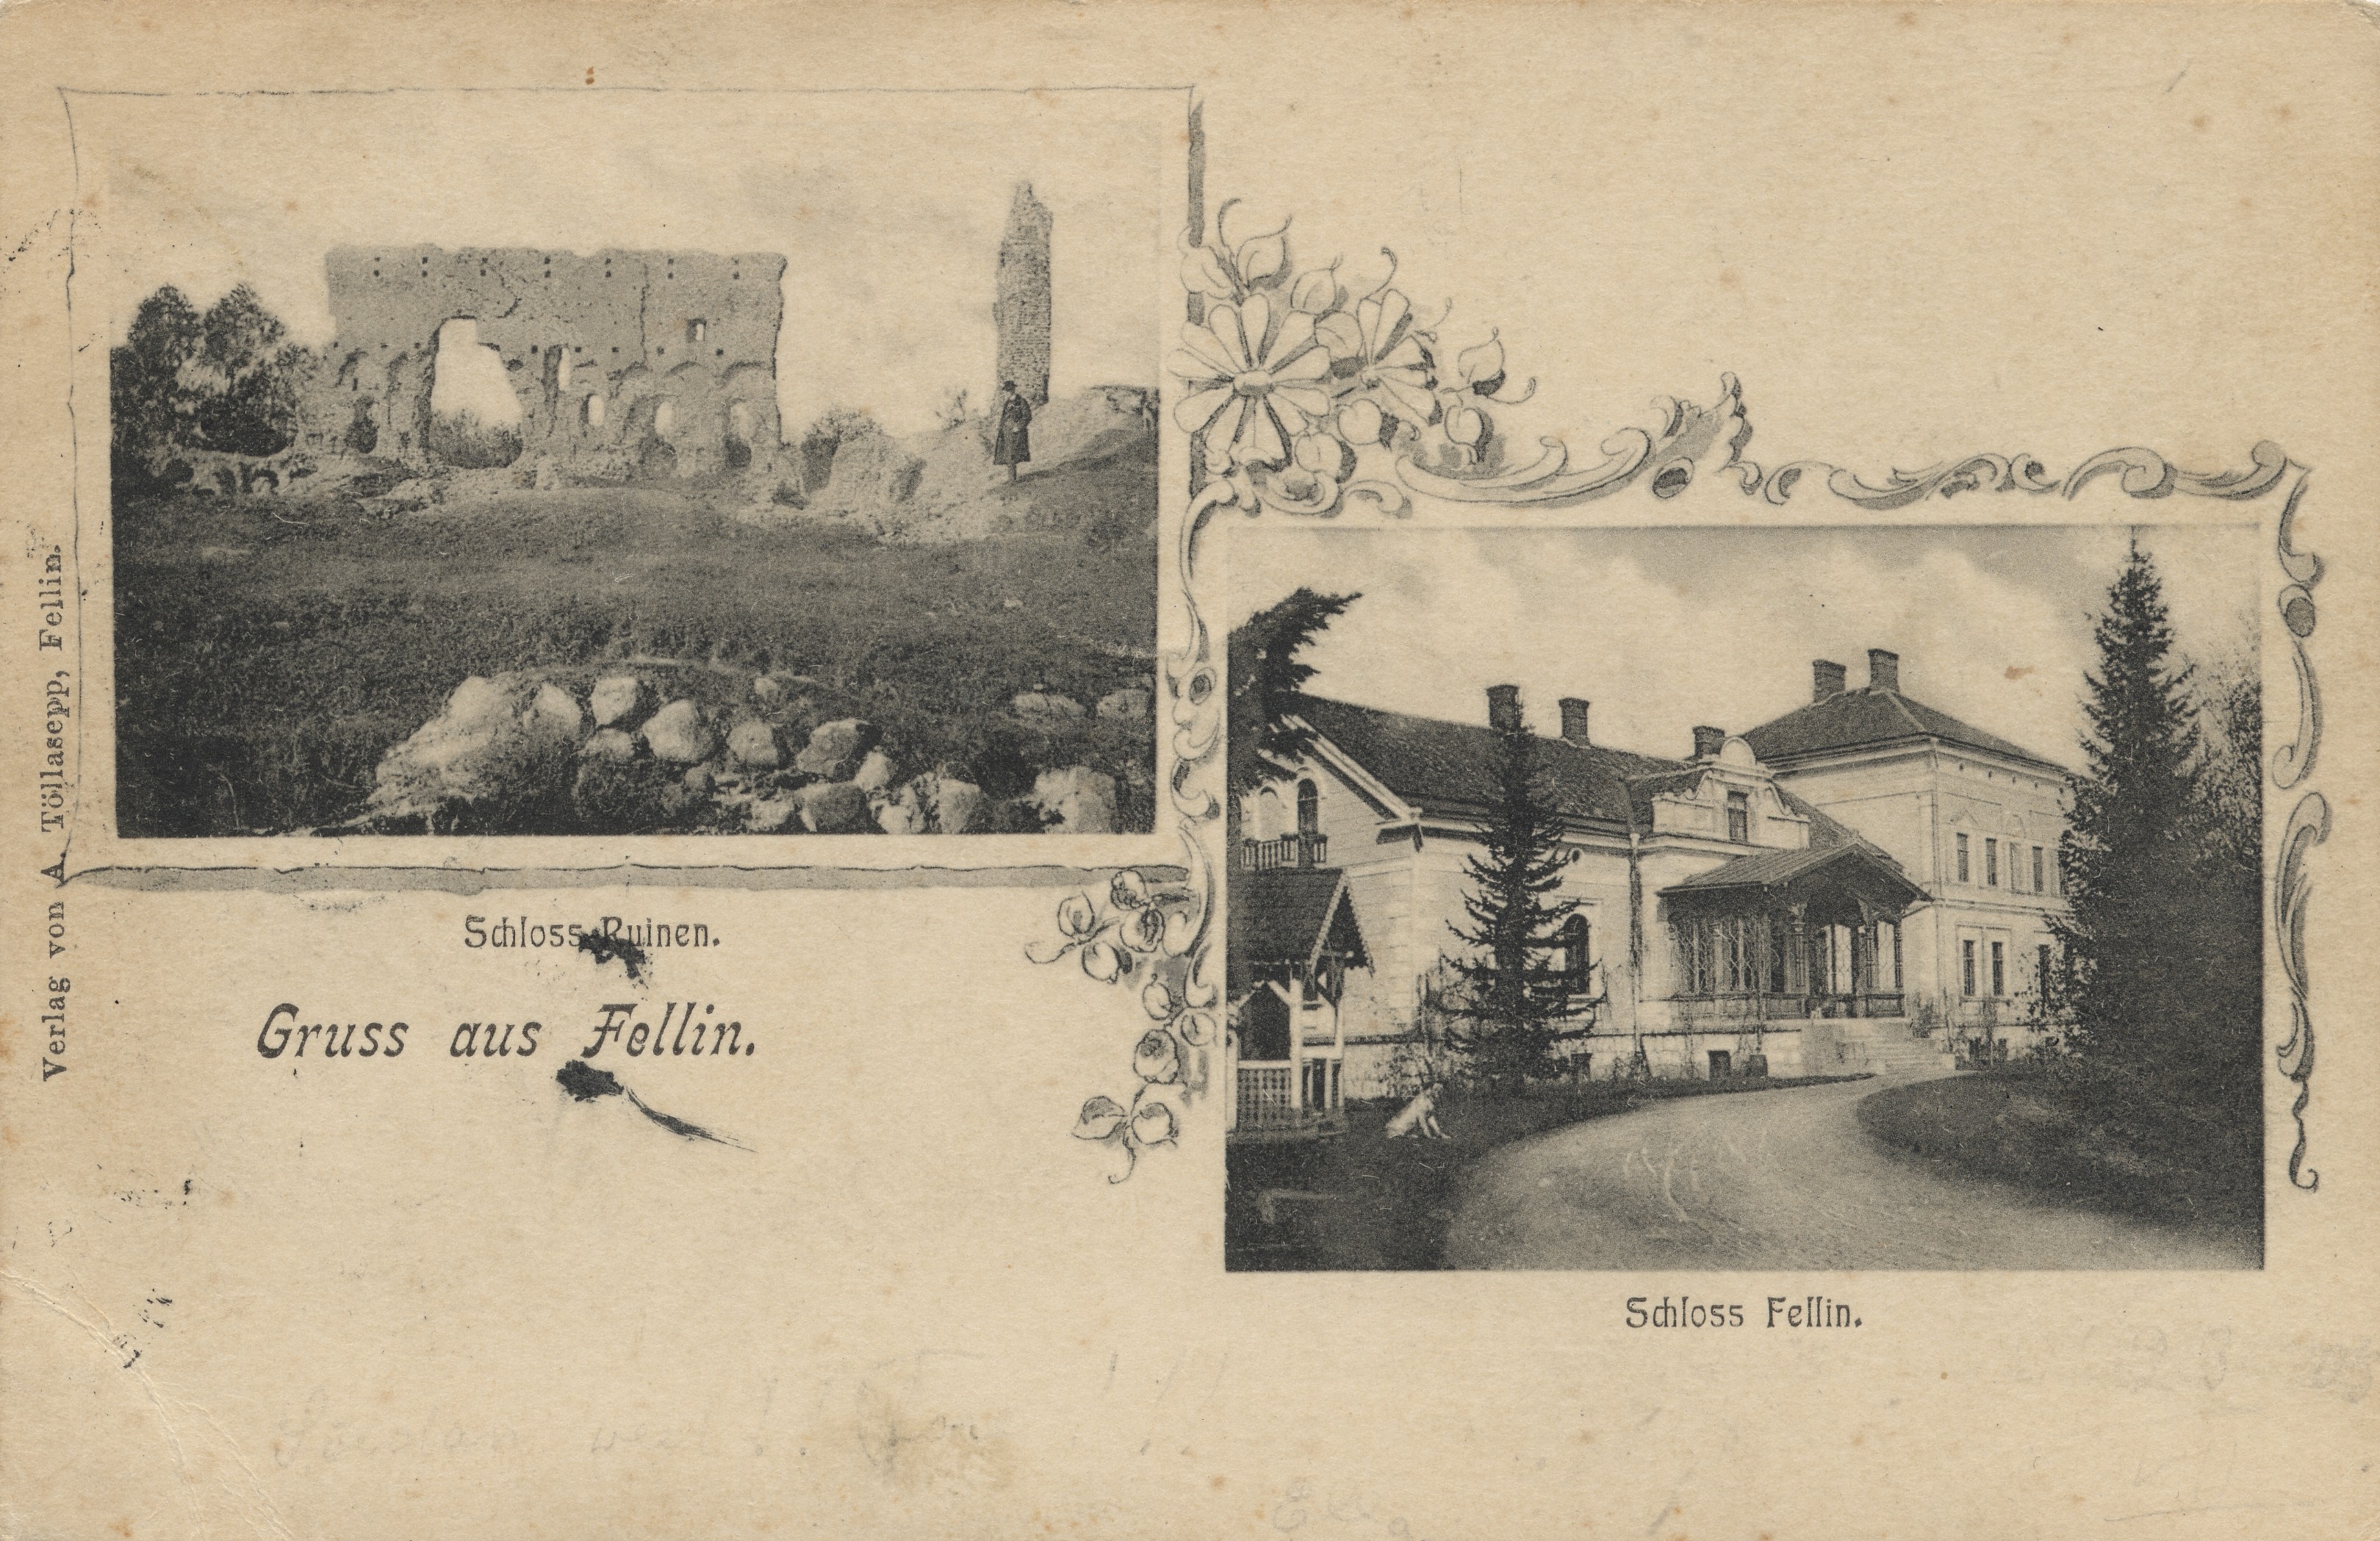 Gruss from Fellin : Castle Ruinen ; Castle Fellin